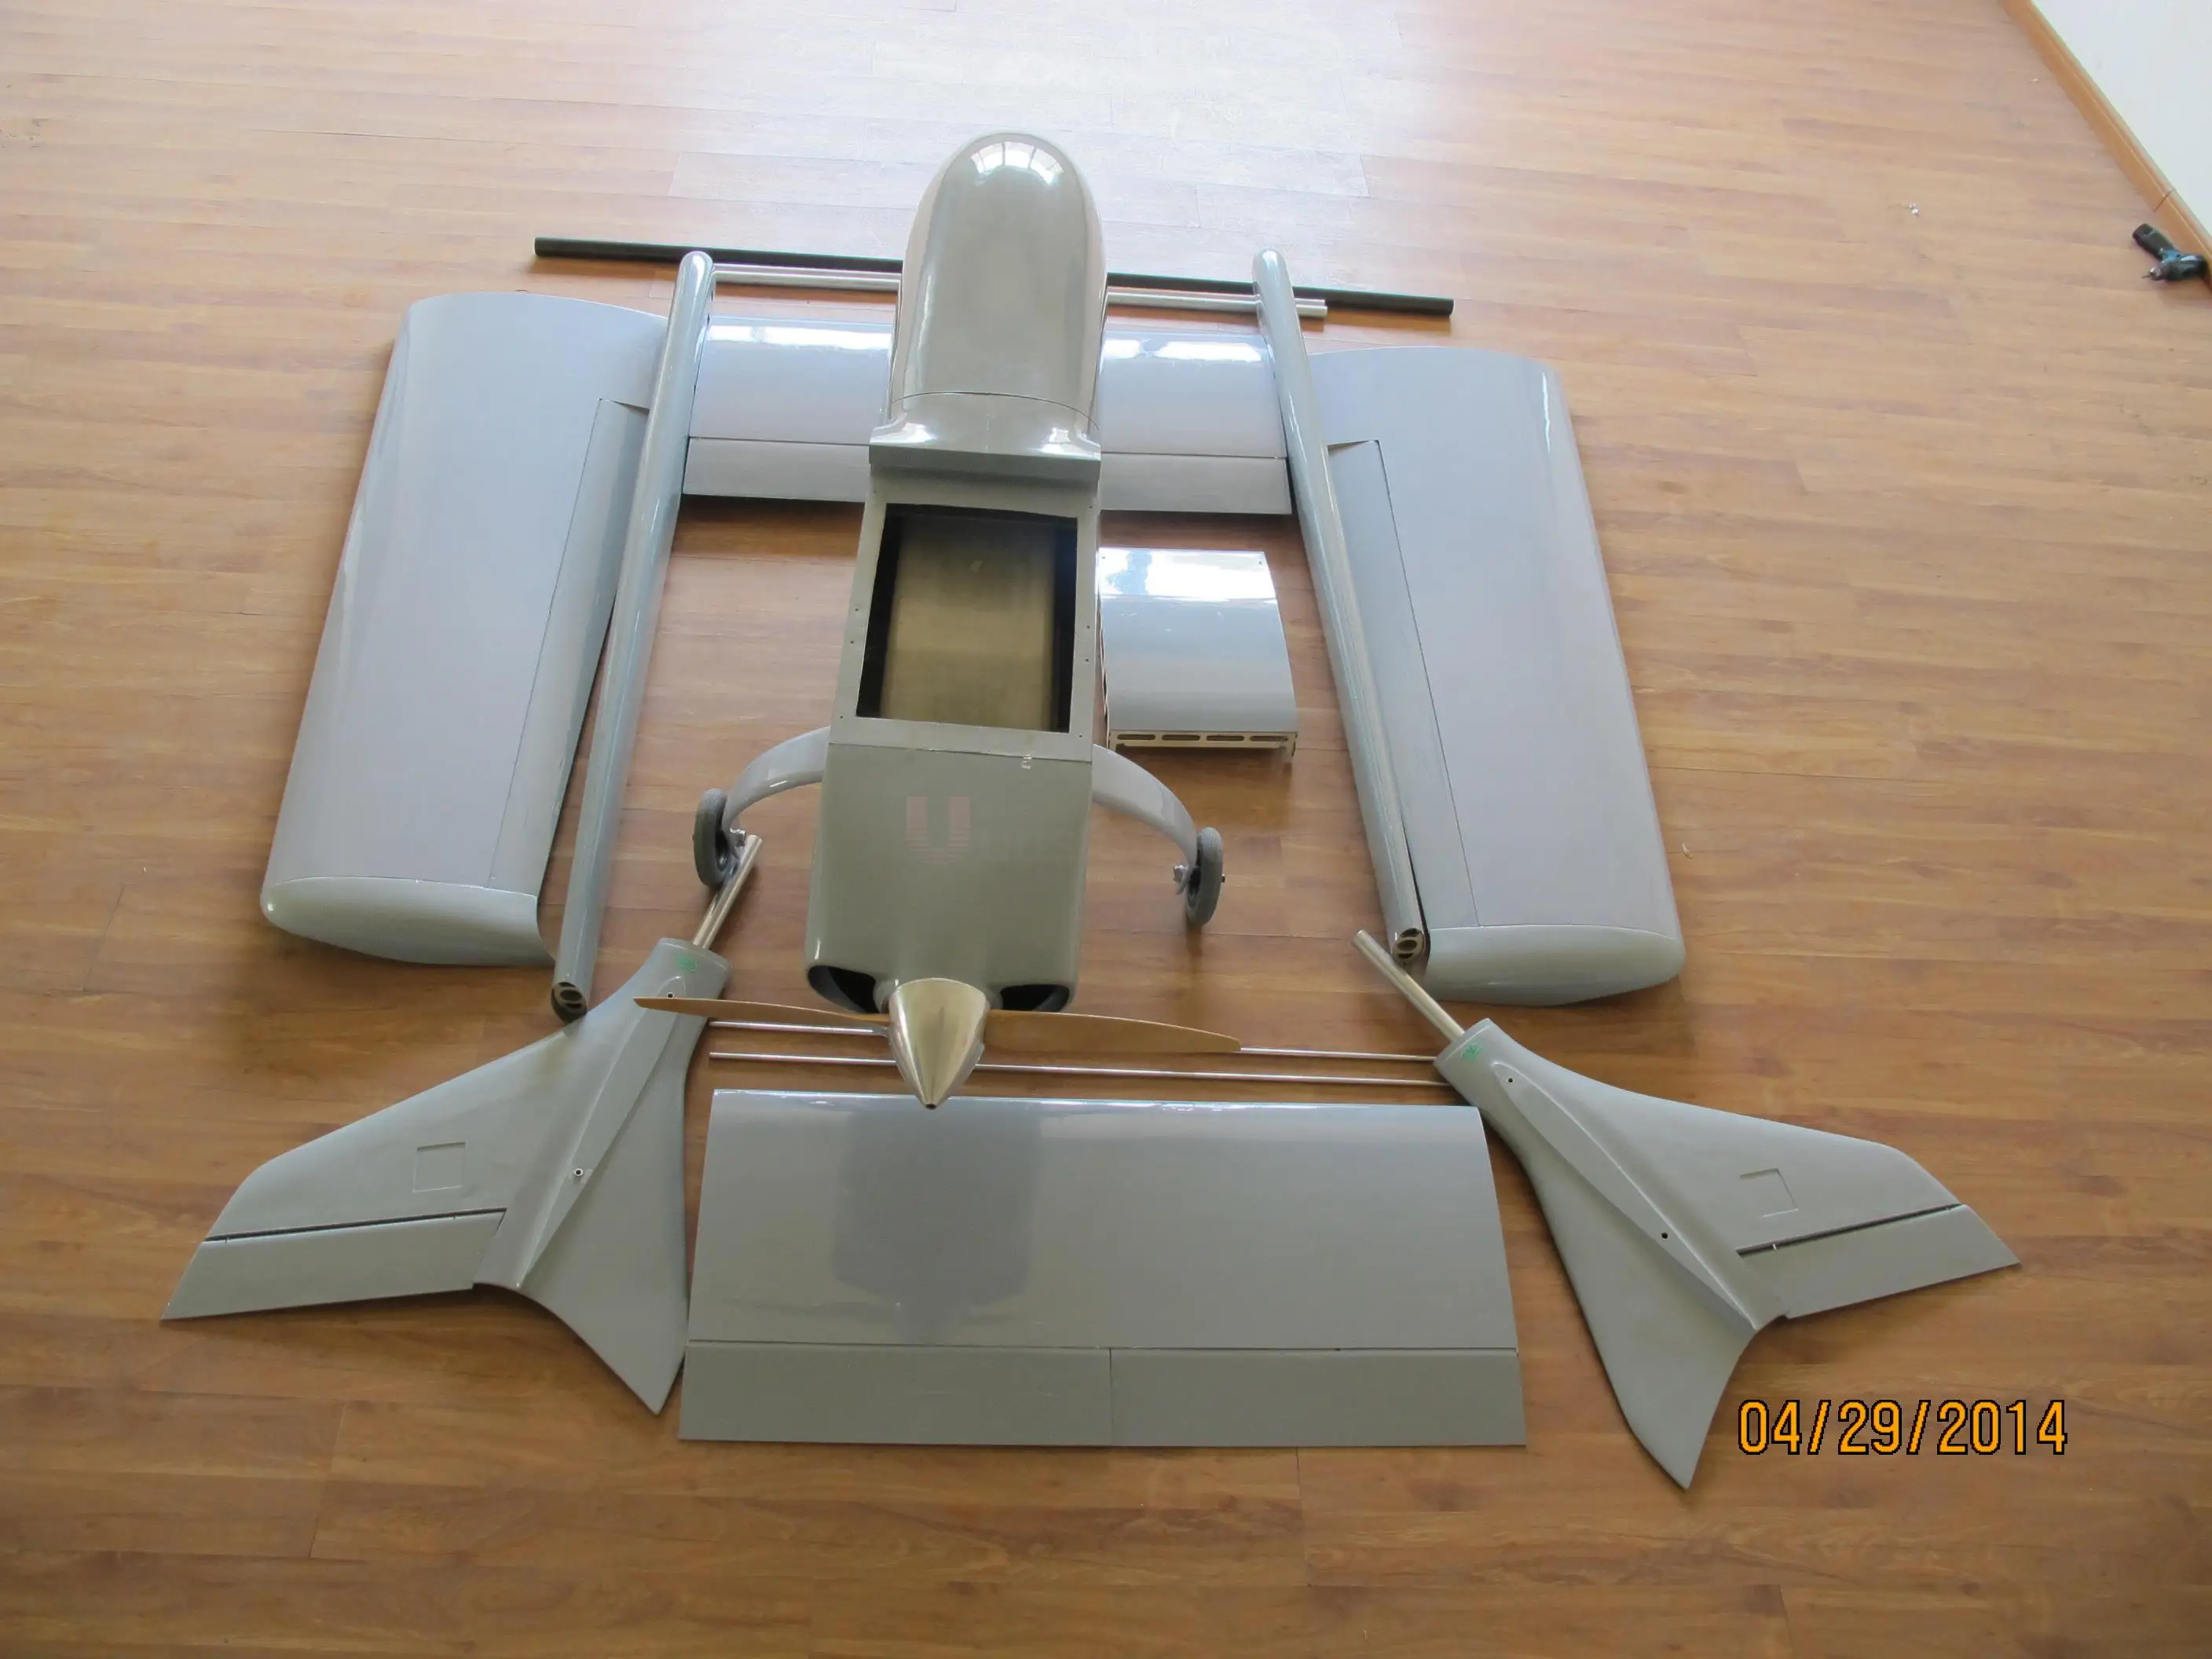 FPV Радио пульт дистанционного управления H T Хвост RC модель самолета Skyeye 4450 мм БПЛА(H) T-Tail Самолет Супер огромная платформа самолет высокое качество